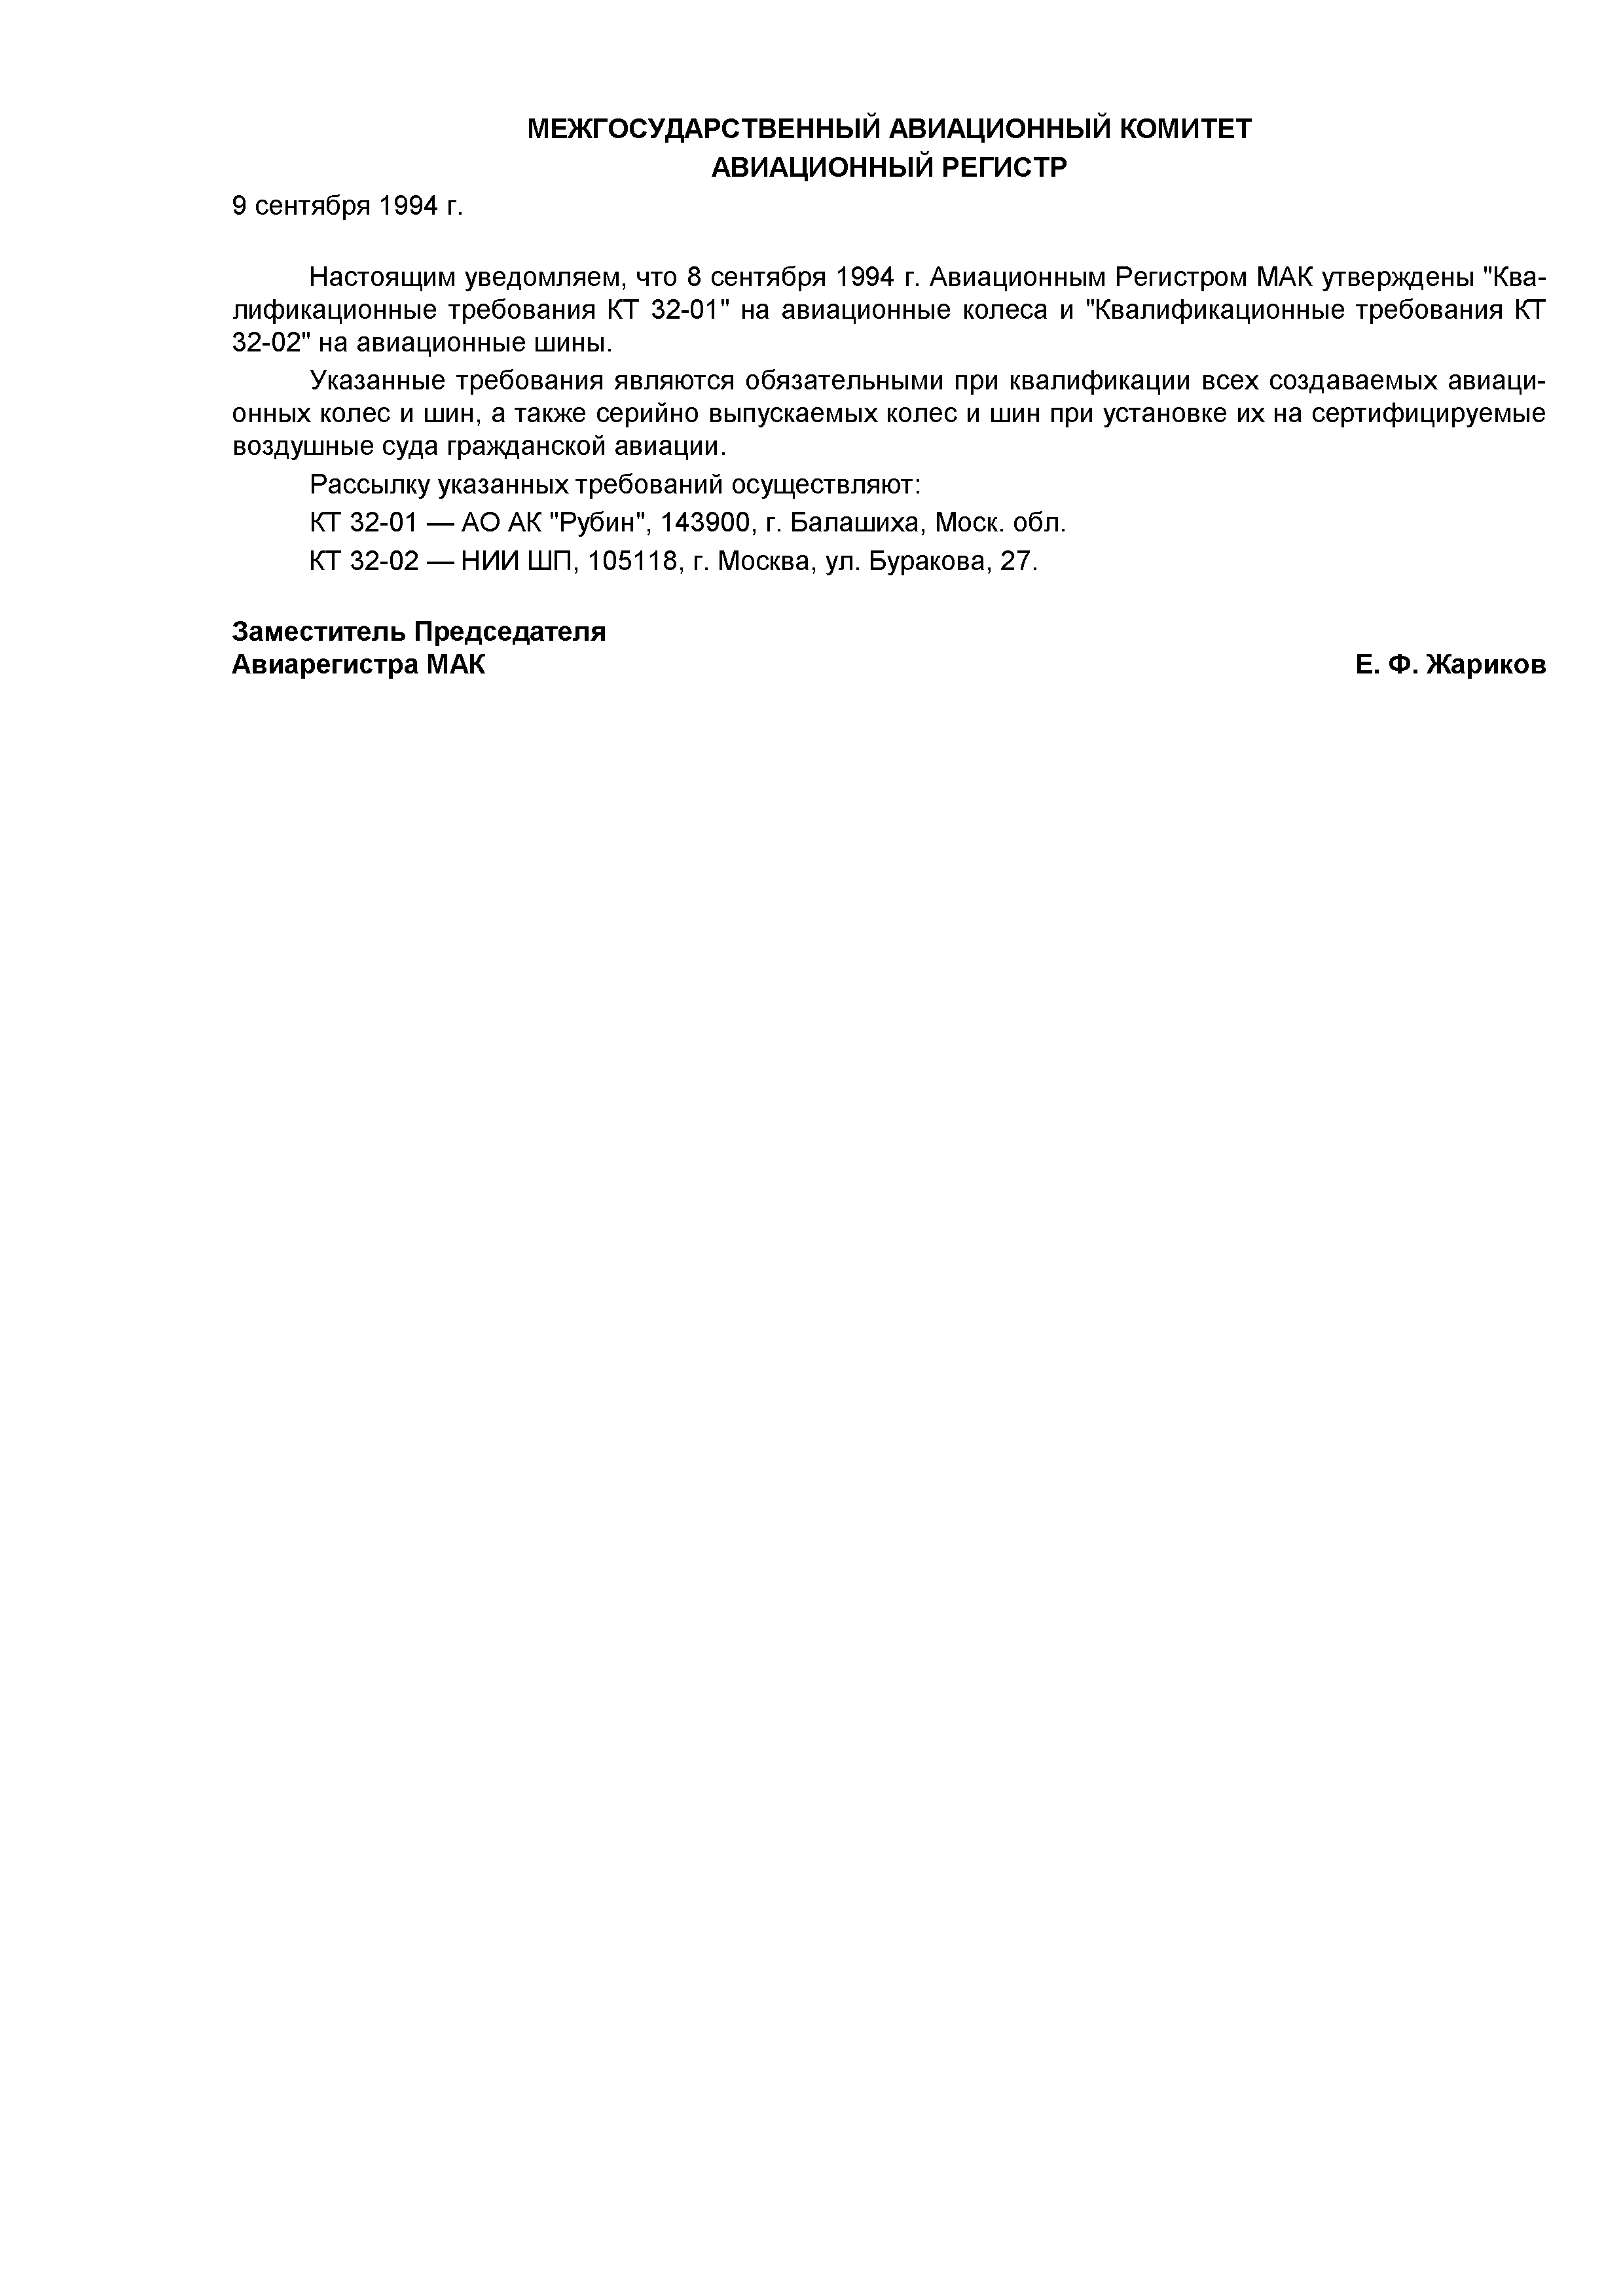 Директивное письмо 09-94